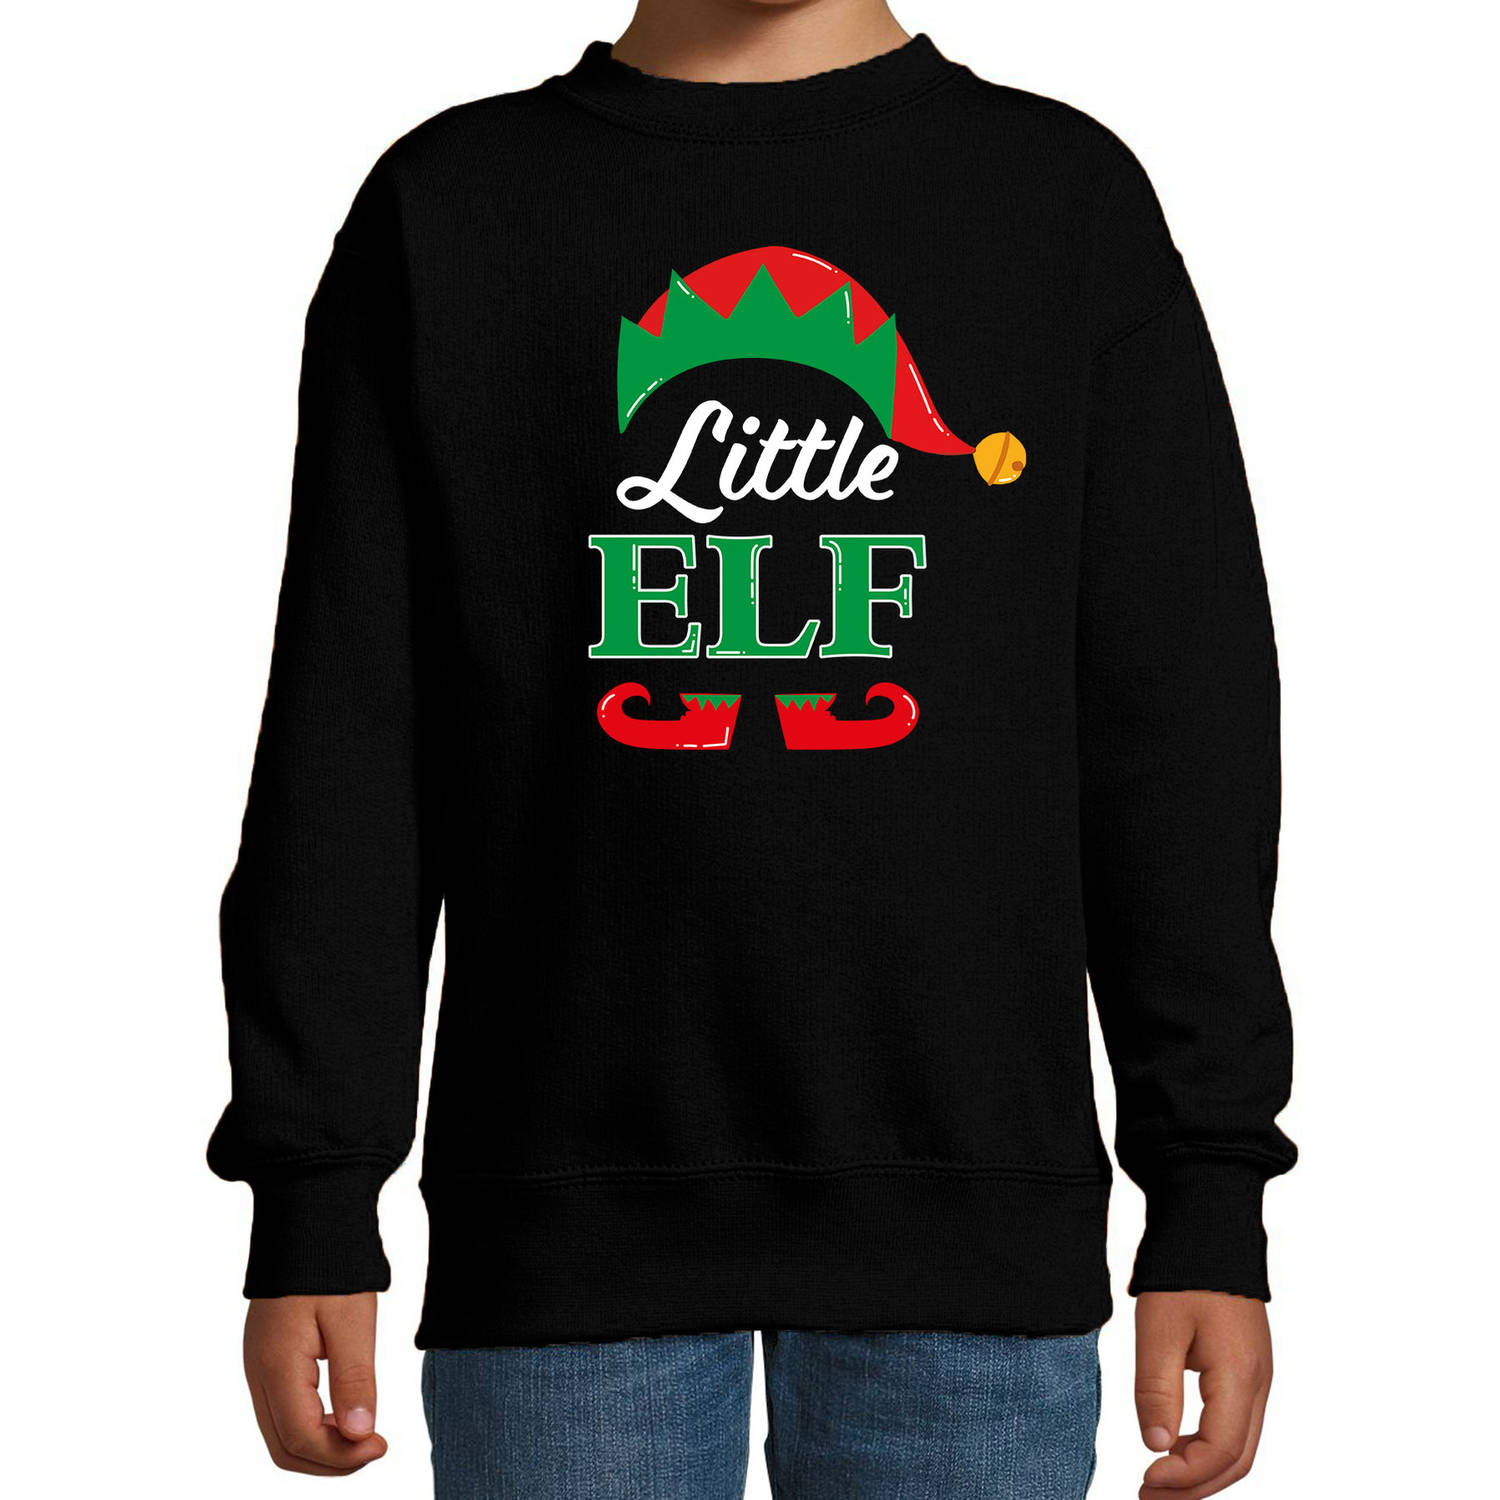 Little elf Kerstsweater / Kersttrui zwart voor kinderen 3-4 jaar (98/104) - kerst truien kind